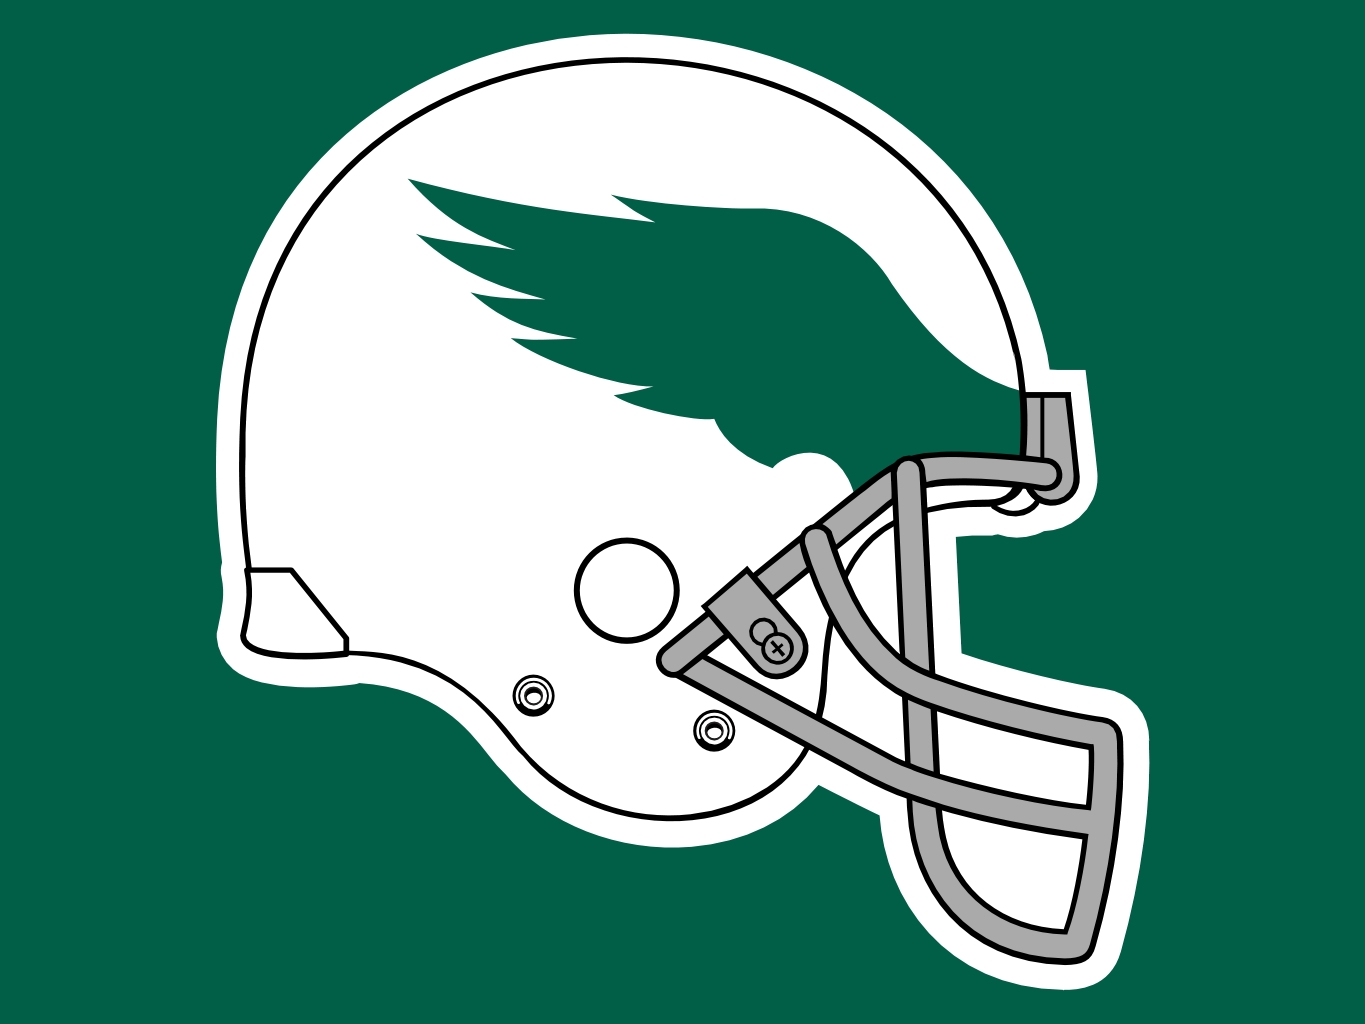 Philadelphia Eagles - Old Helmet